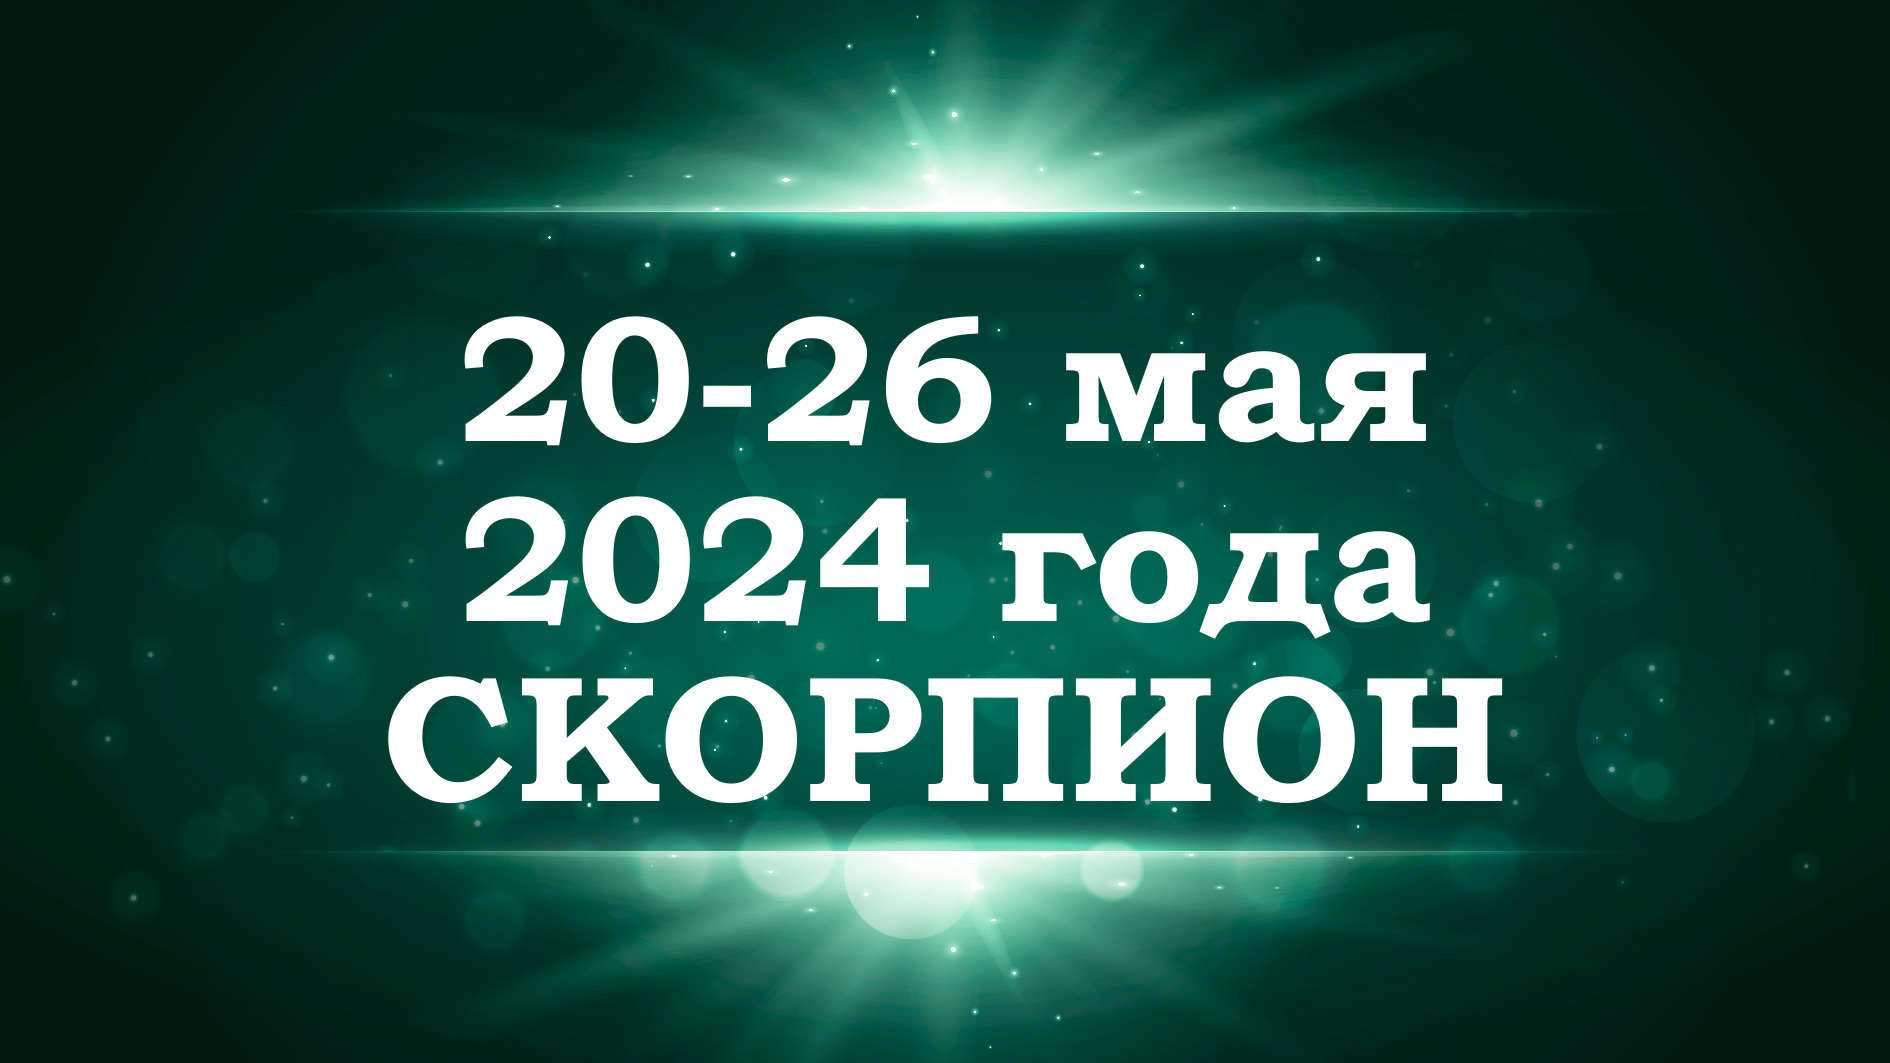 СКОРПИОН | ТАРО прогноз на неделю с 20 по 26 мая 2024 года